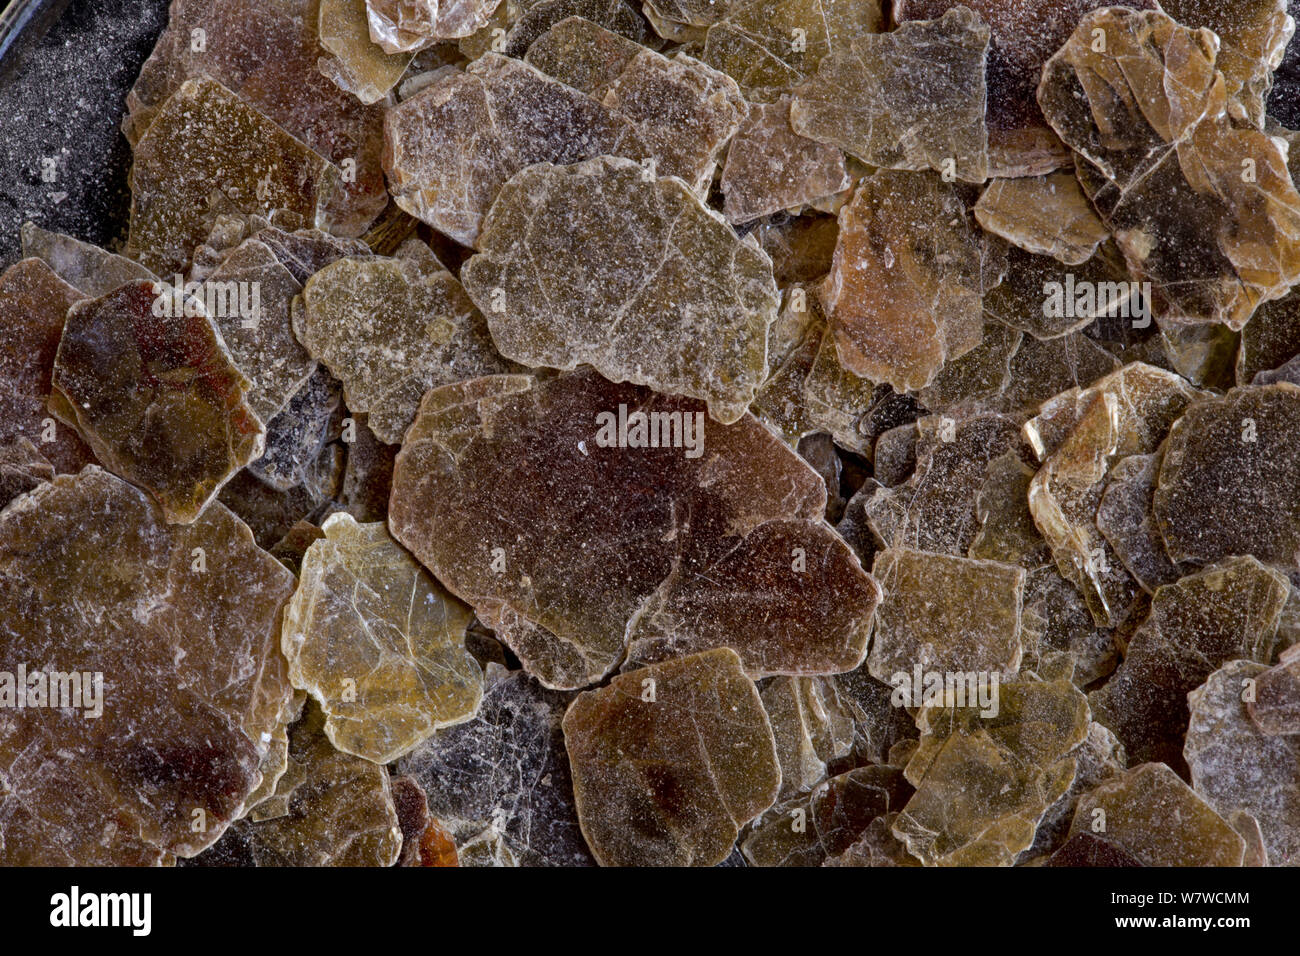 Fiocchi di vermiculite, un, idrata minerali di silicato classificato come un fillosilicato, si dilata notevolmente quando riscaldato. Foto Stock